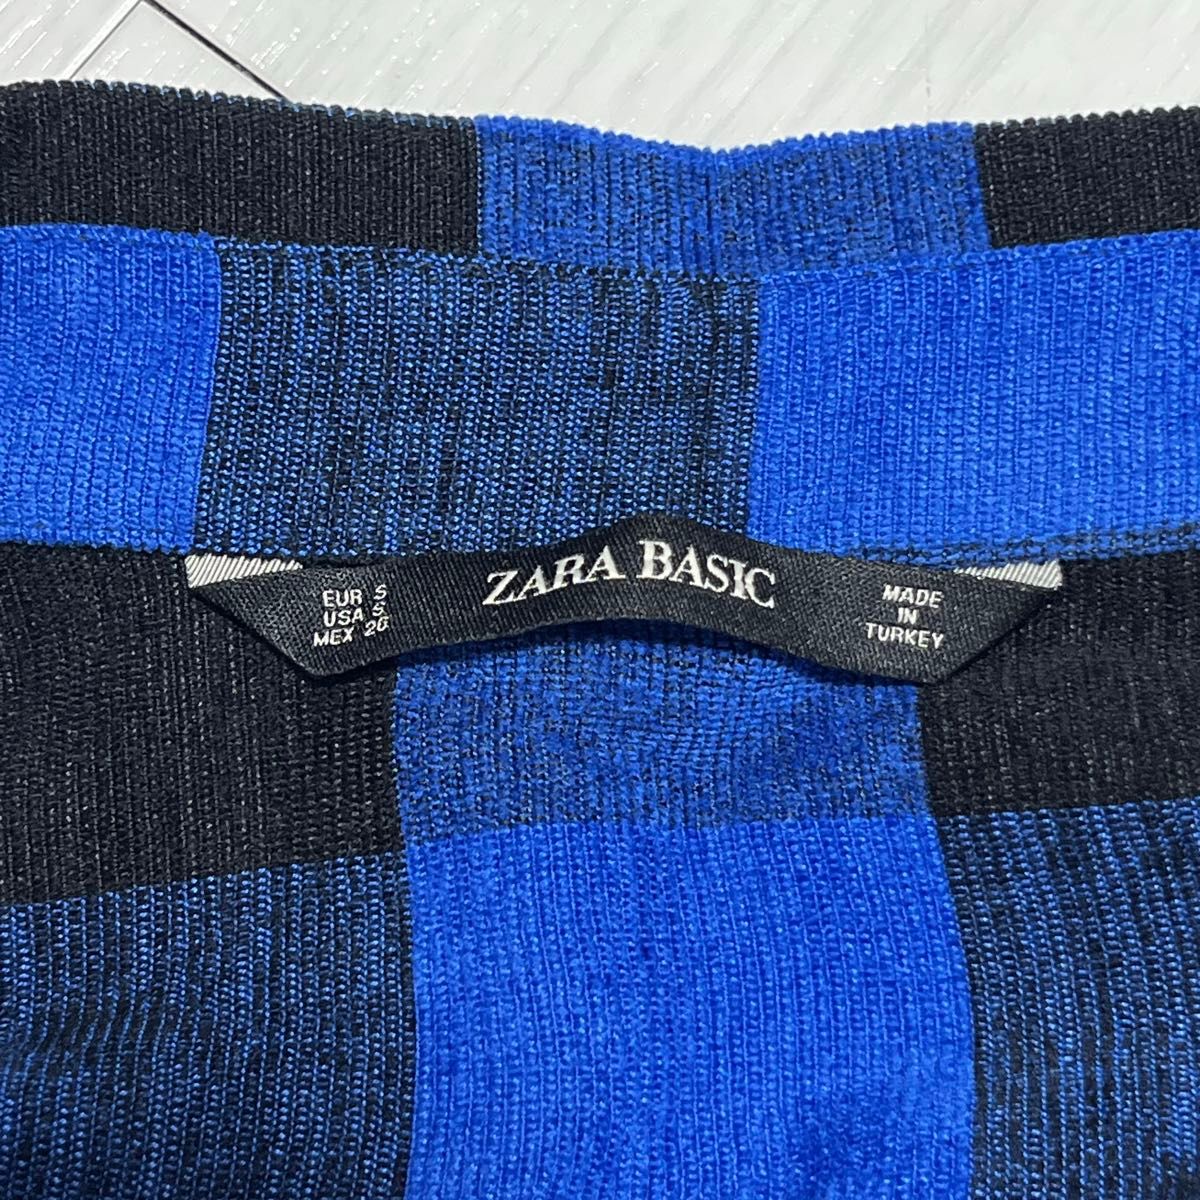 ZARA BASIC ネルシャツ チェック 長袖 胸ポケット シャツ ブルー